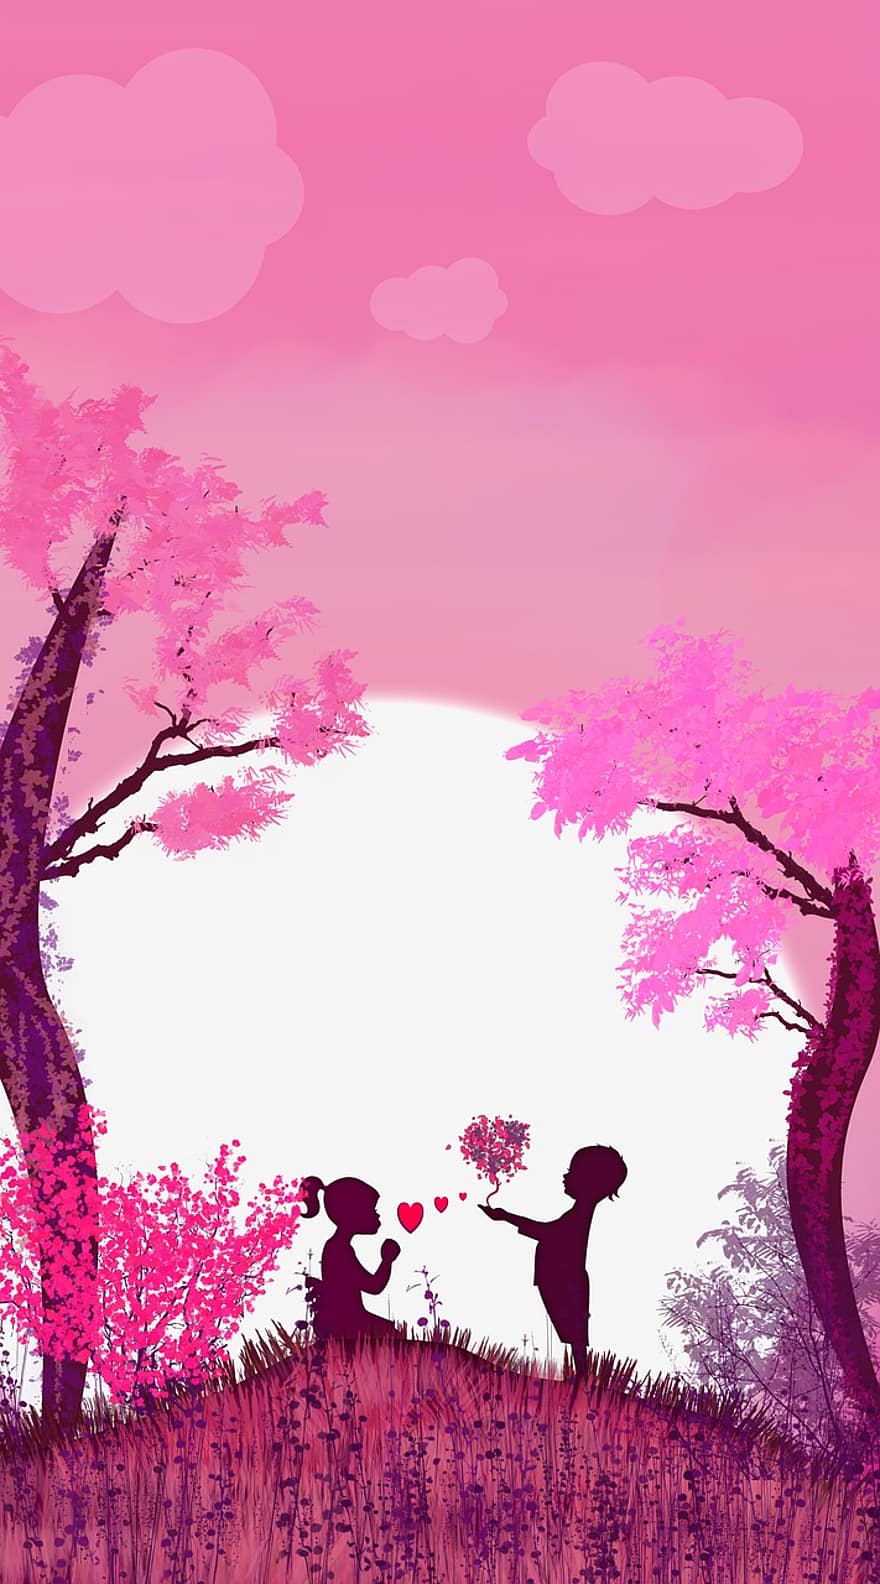 amour, couple, fond rose, romance, arbre, vecteur, illustration, le coucher du soleil, paysage, arrière-plans, silhouette